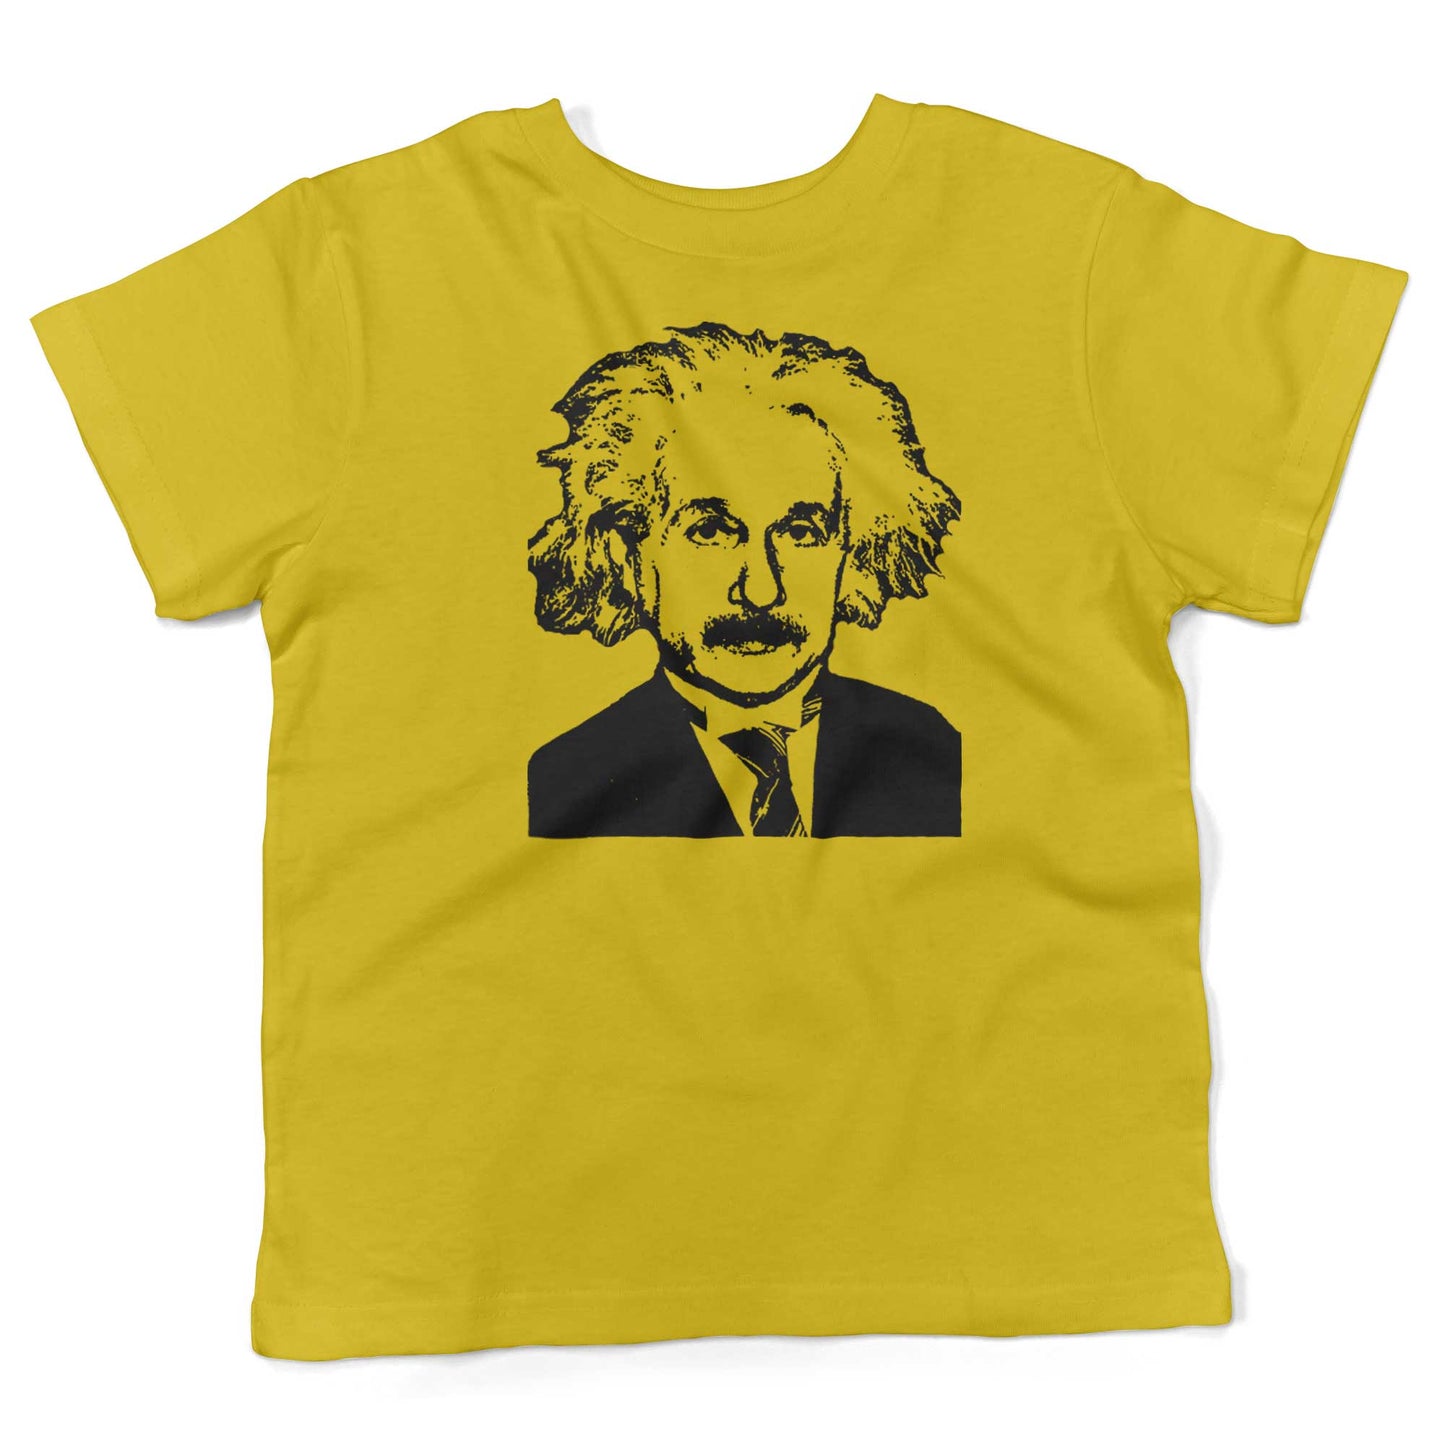 Albert Einstein Toddler Shirt-Sunshine Yellow-2T